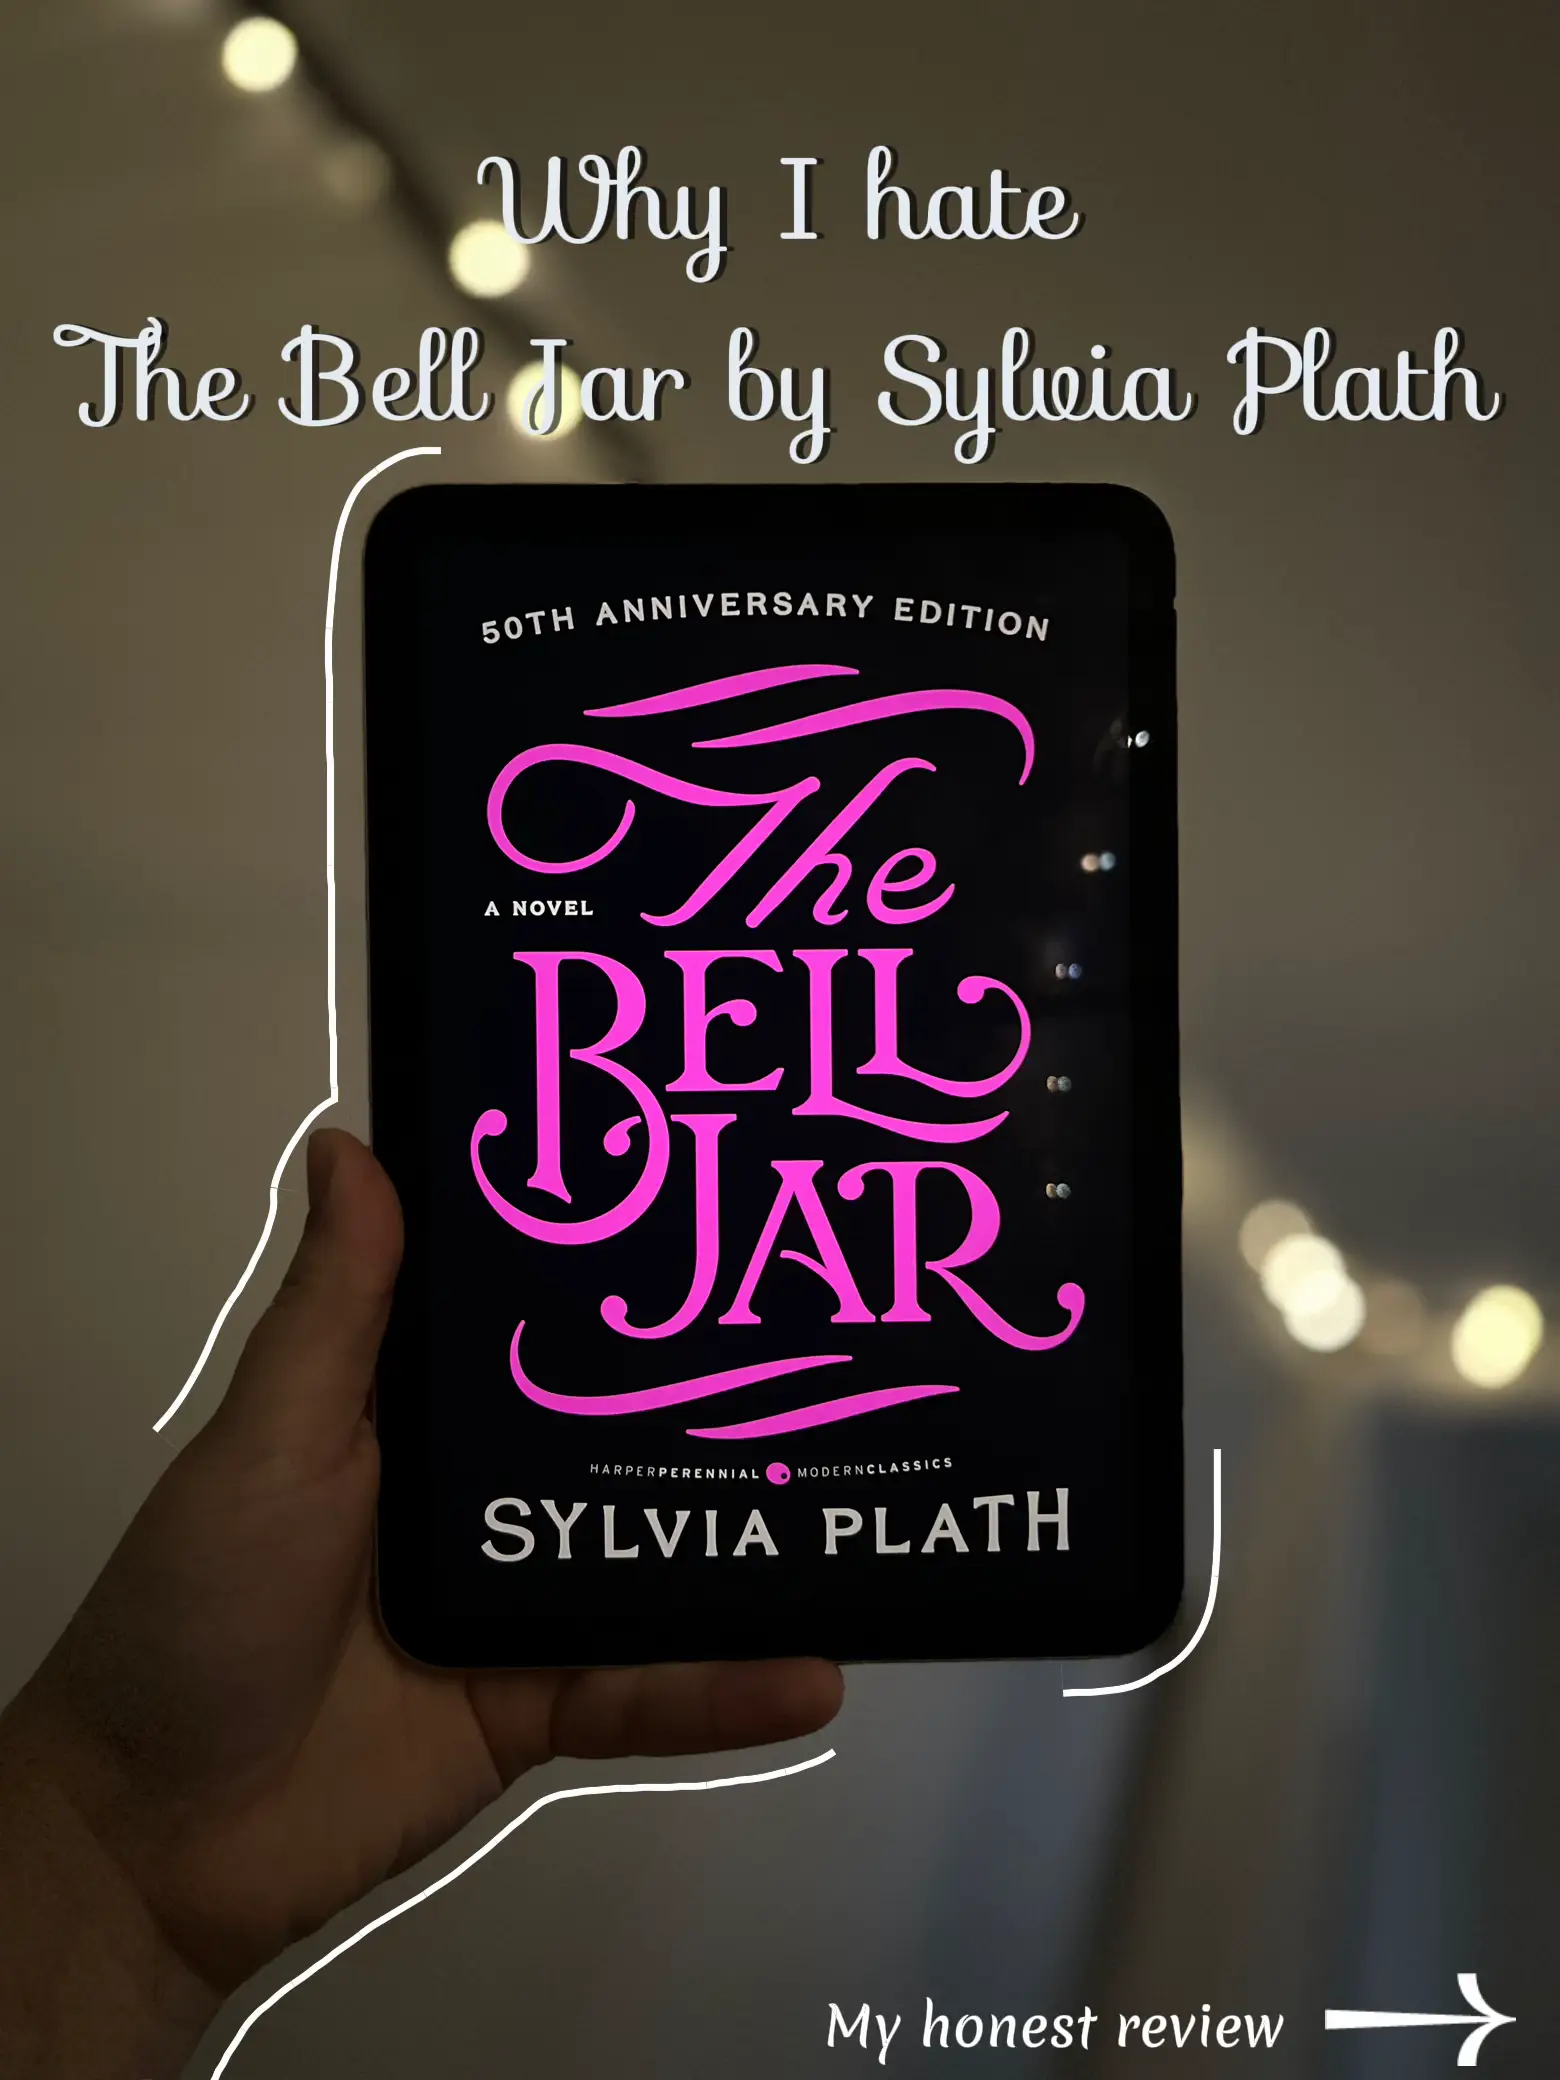 The Bell Jar (Penguin/Faber audiobooks)